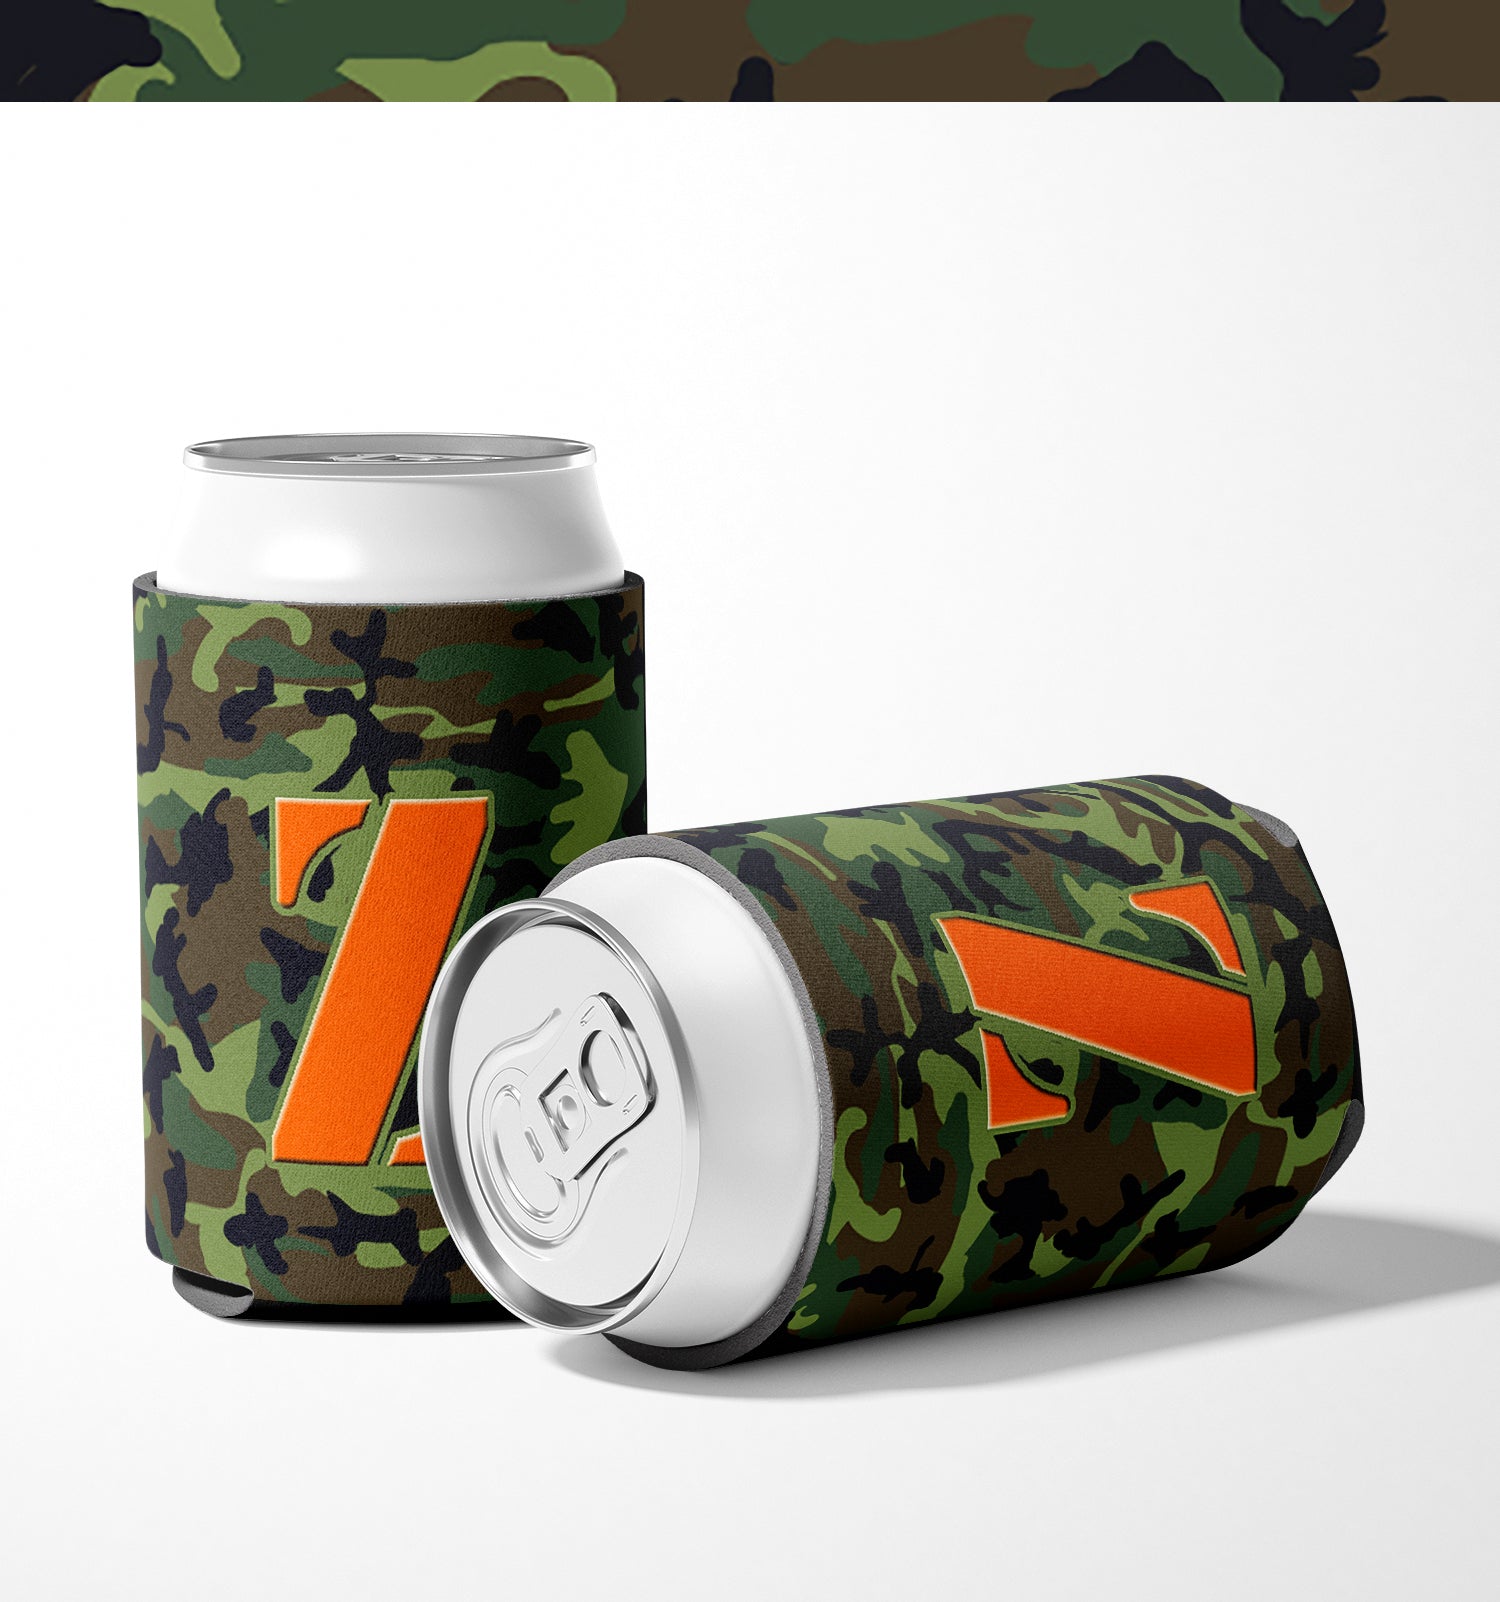 Letter Z Initial Monogram - Camo Green Can or Bottle Beverage Insulator Hugger.